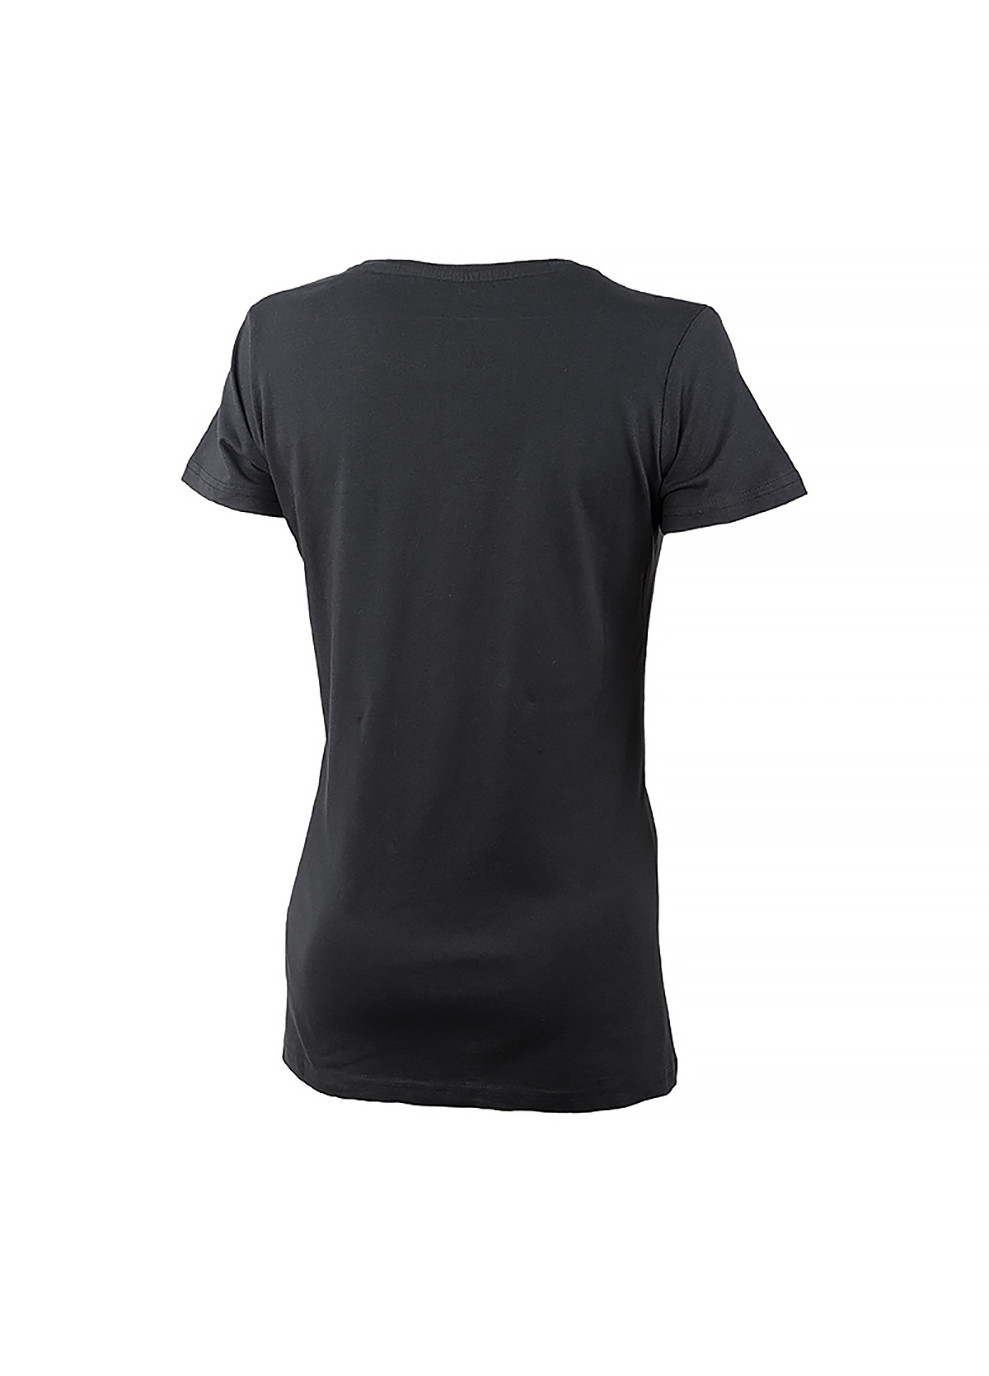 Черная демисезон женская футболка t-shirt botanical print j22w черный Jeep